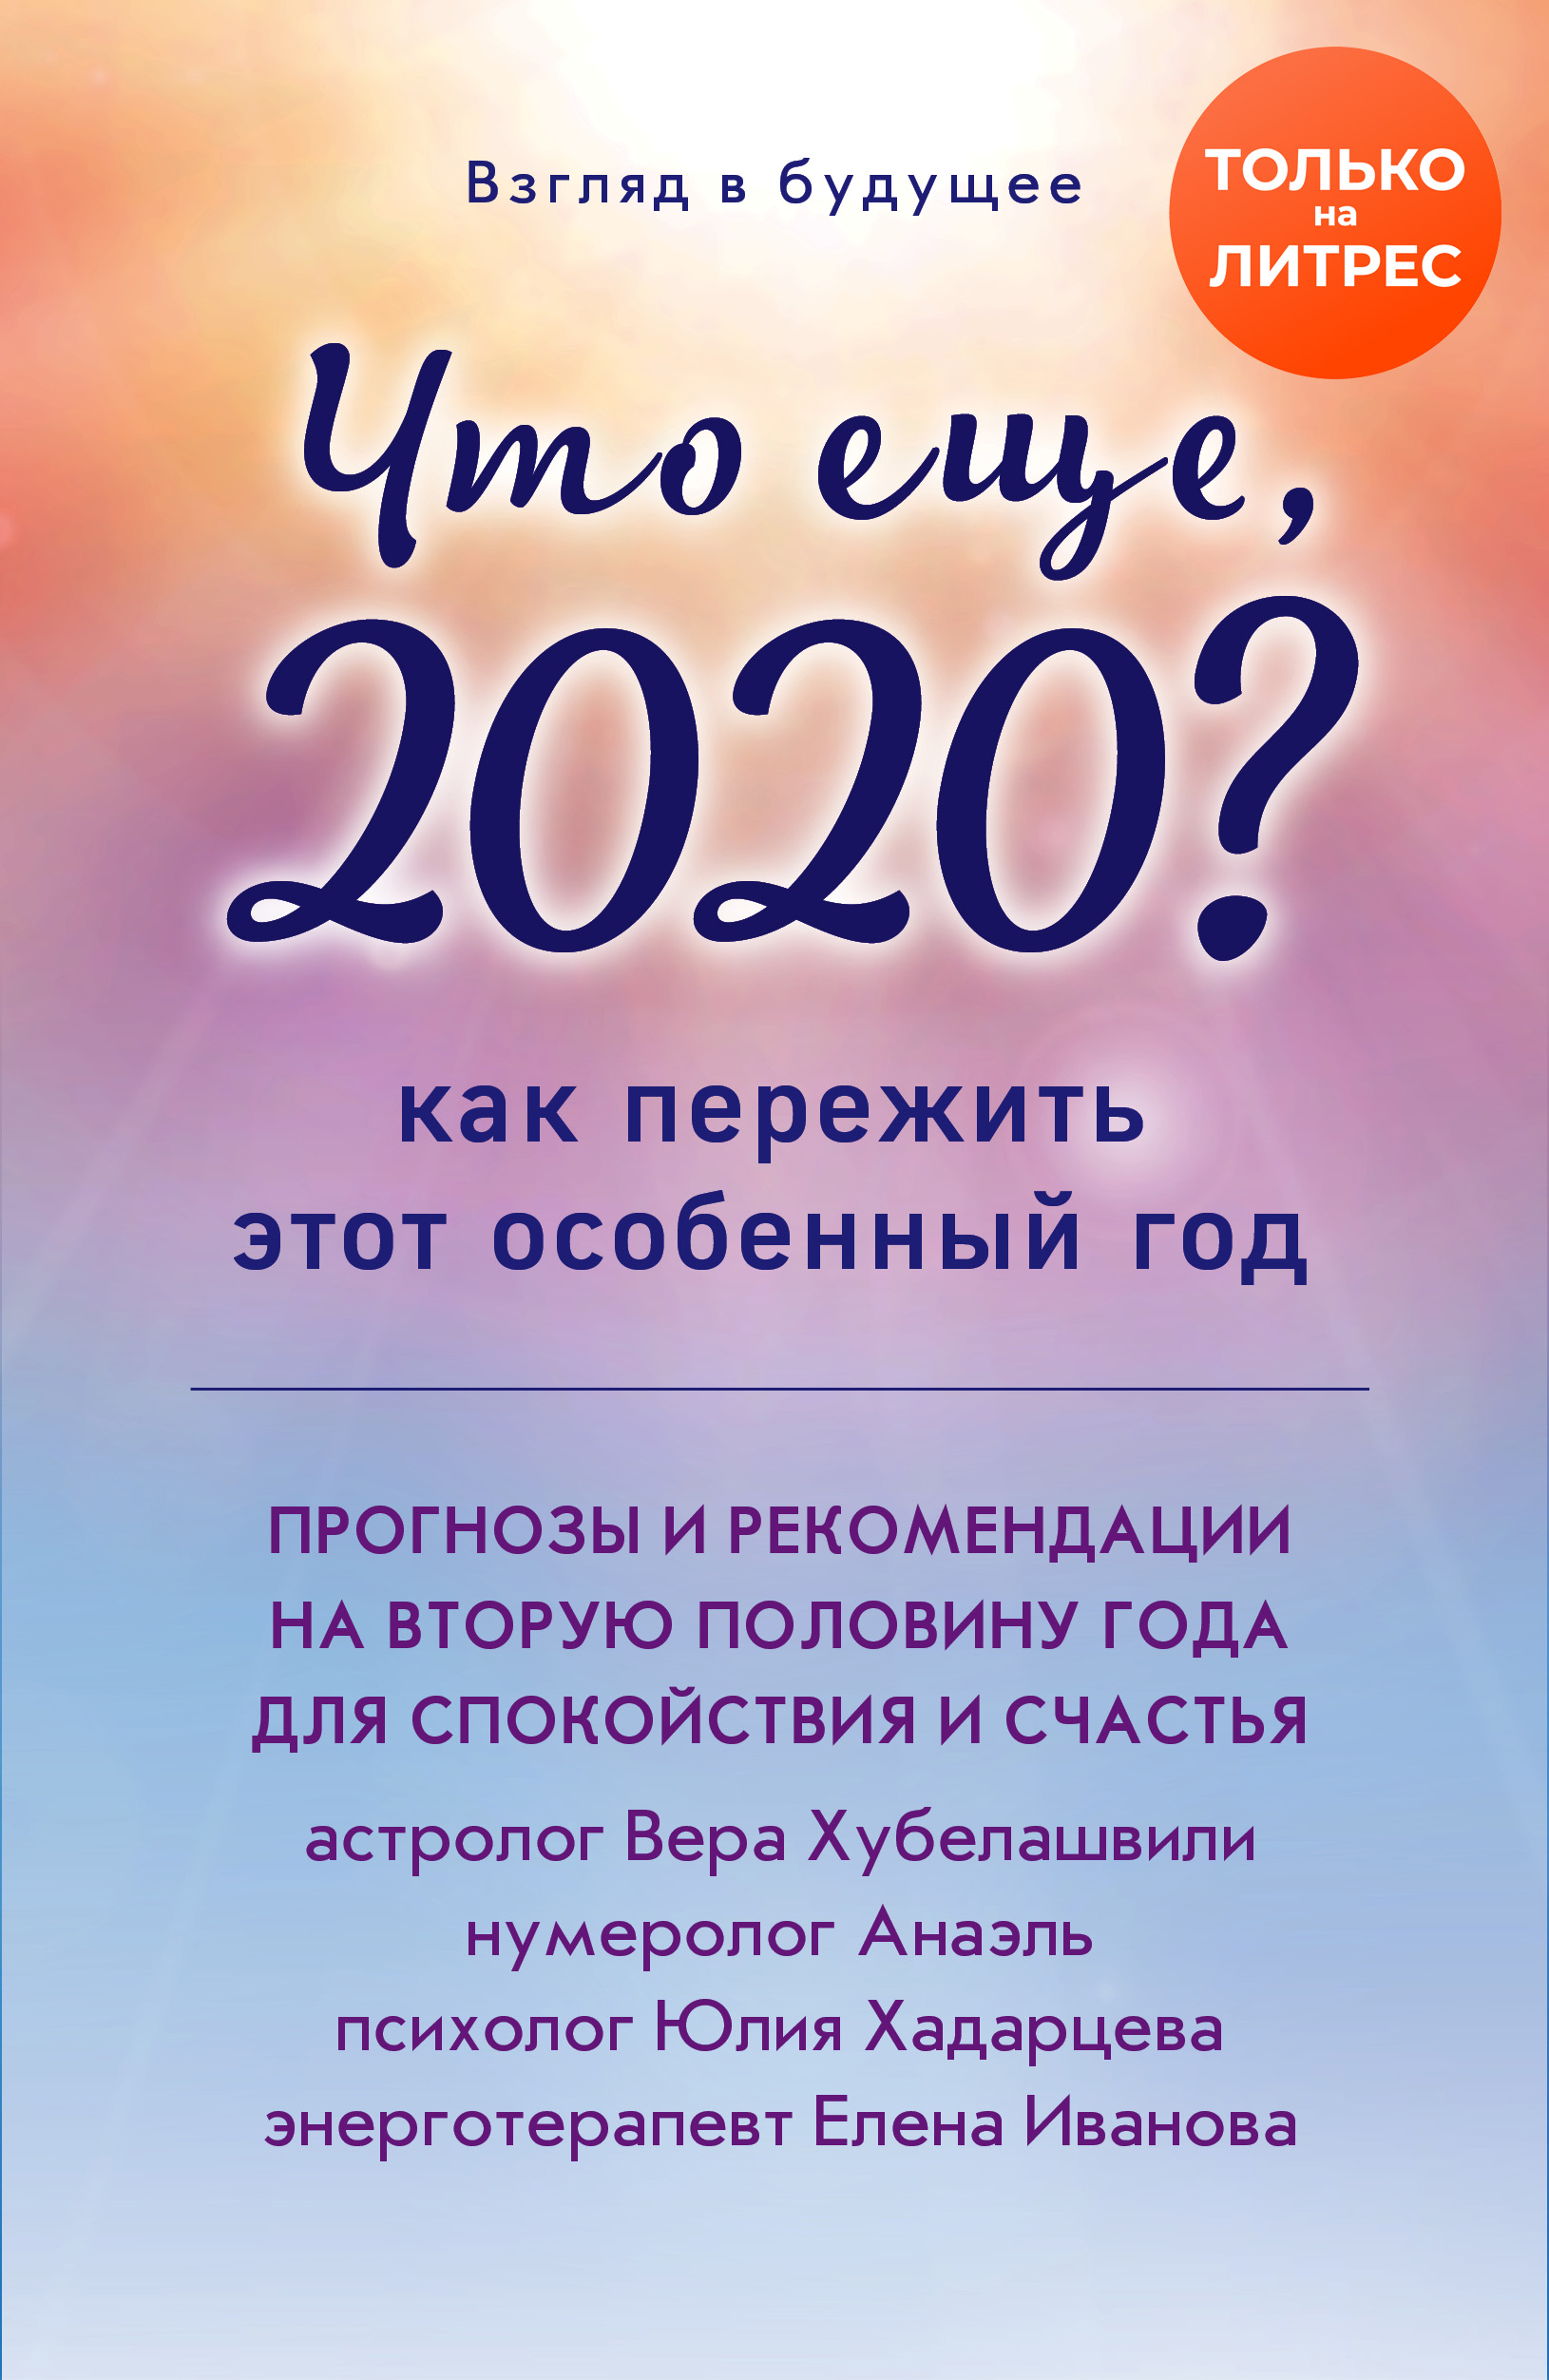 Взгляд в будущее. Что еще, 2020? Как пережить этот особенный год читать онлайн